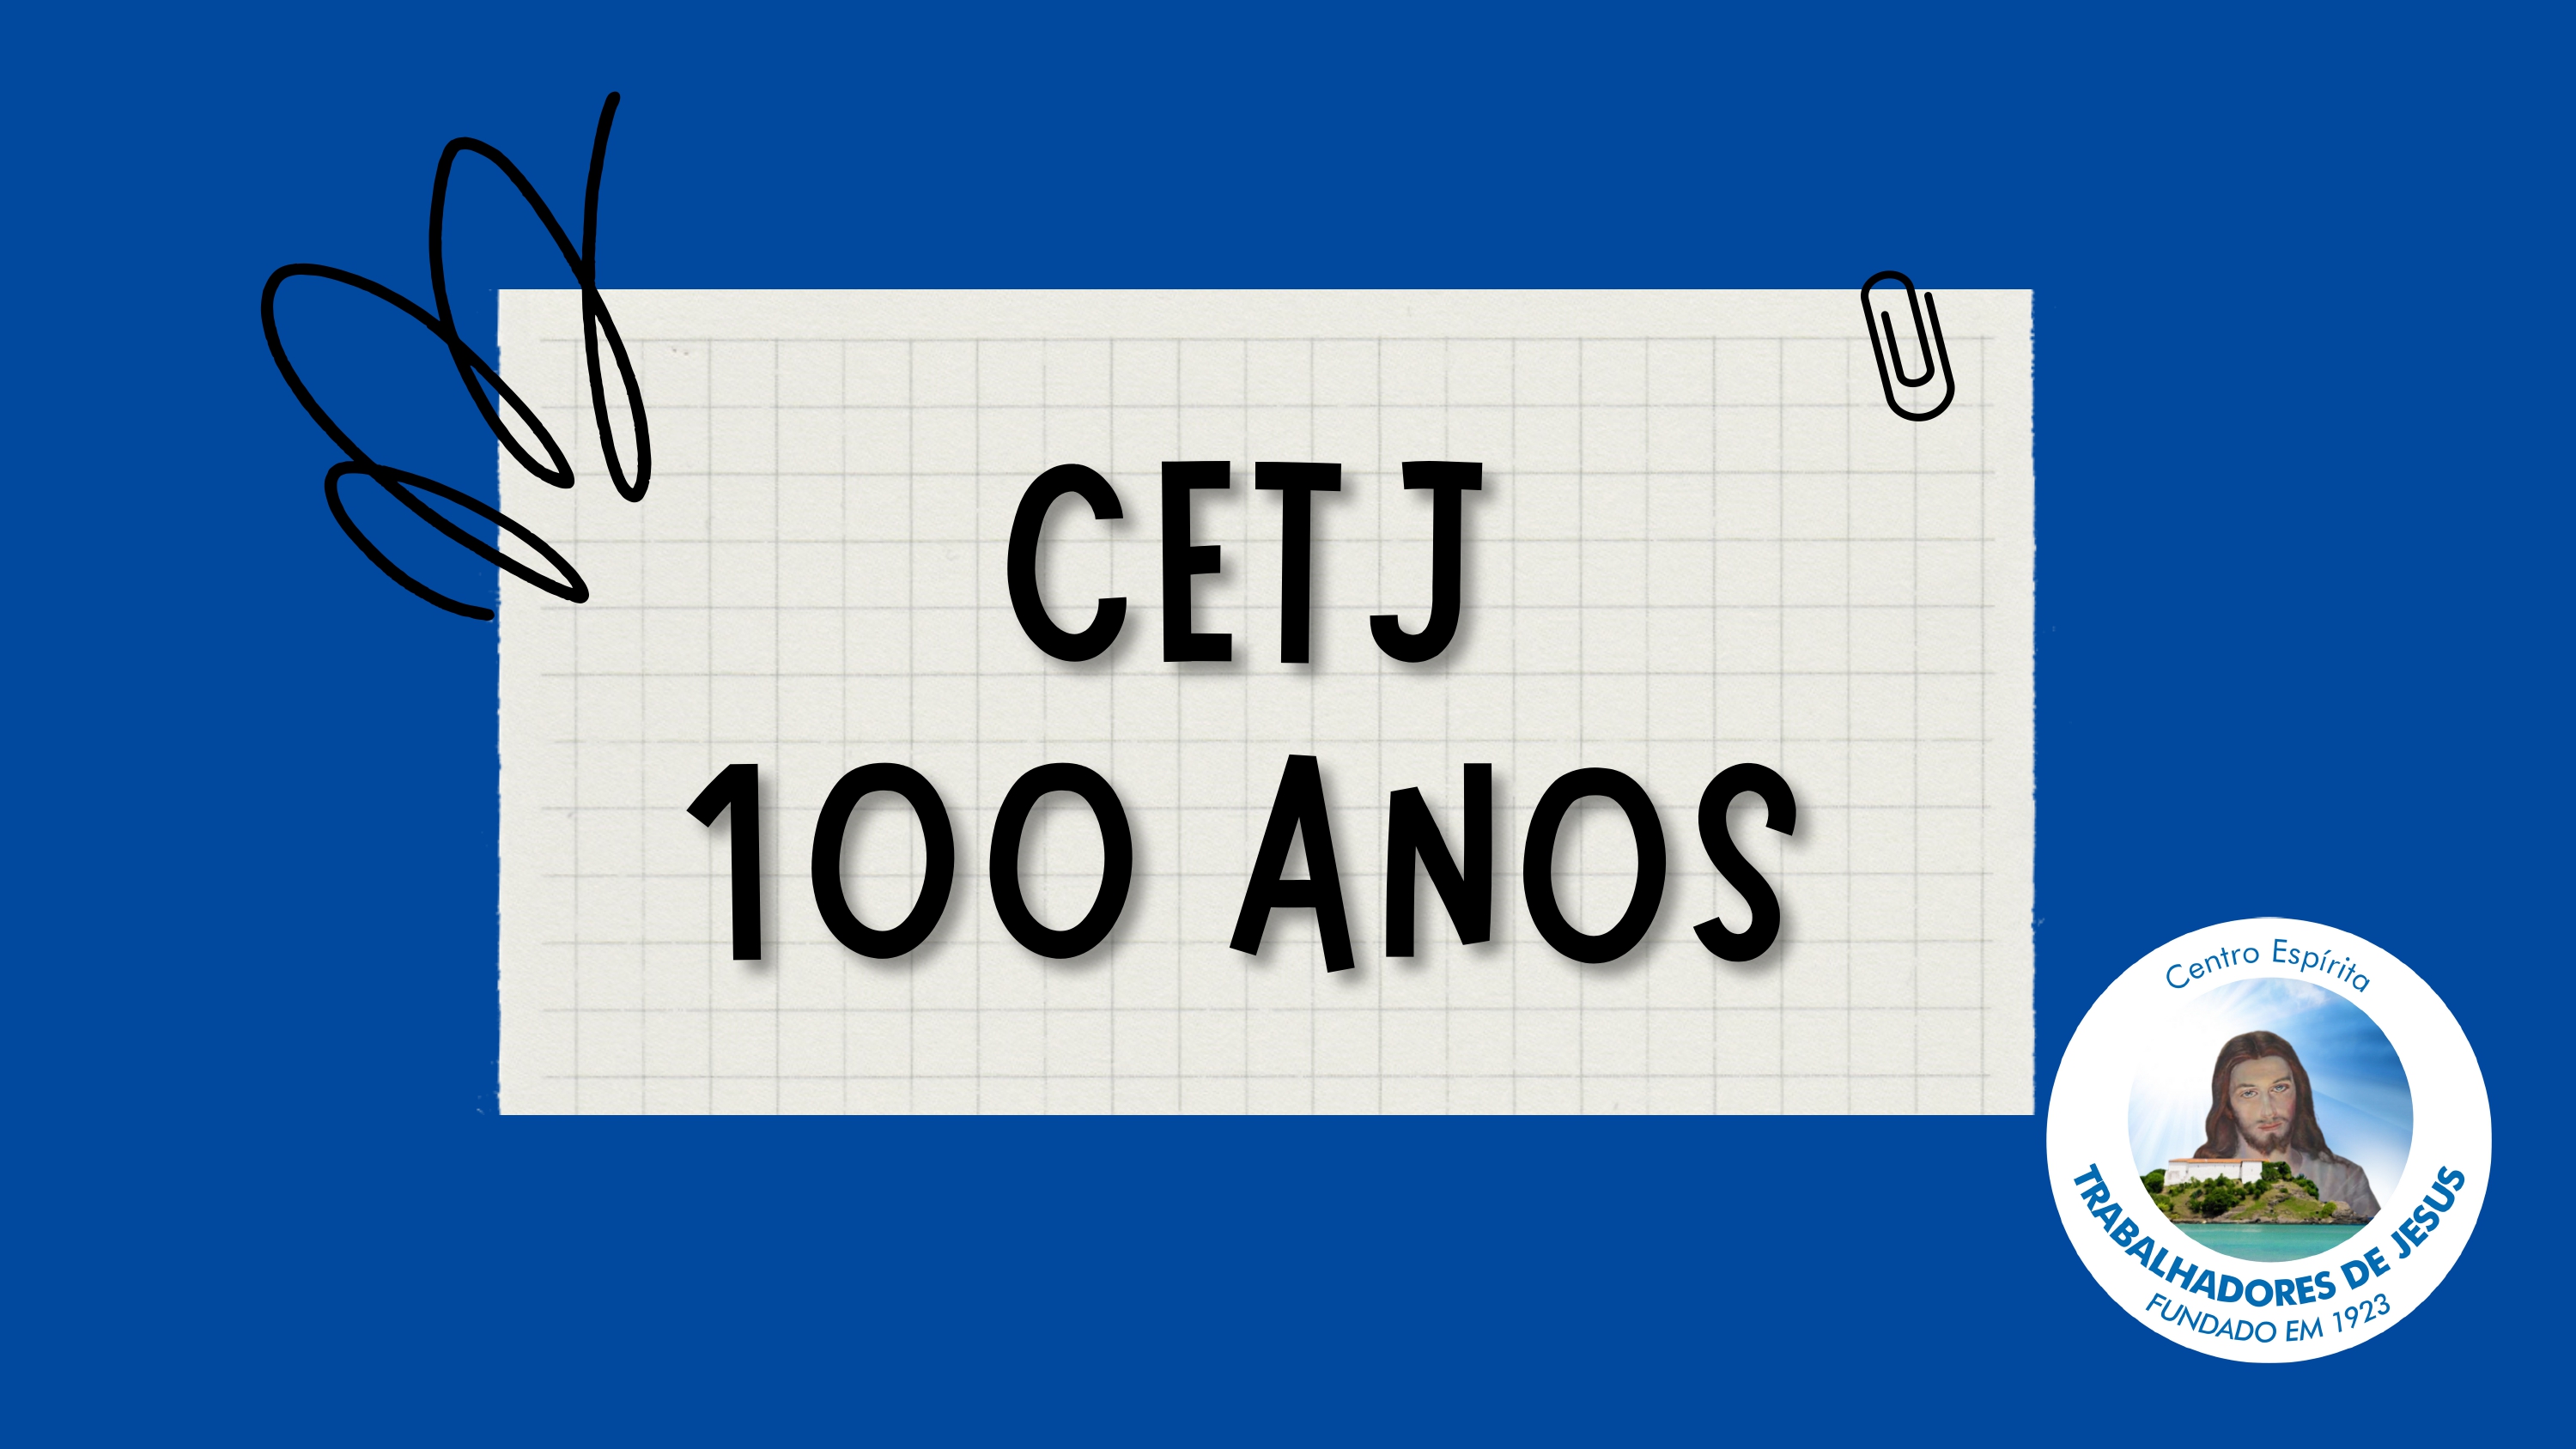 100-ANOS-CETJ-APRESENTAÇÃO_pages-to-jpg-0001